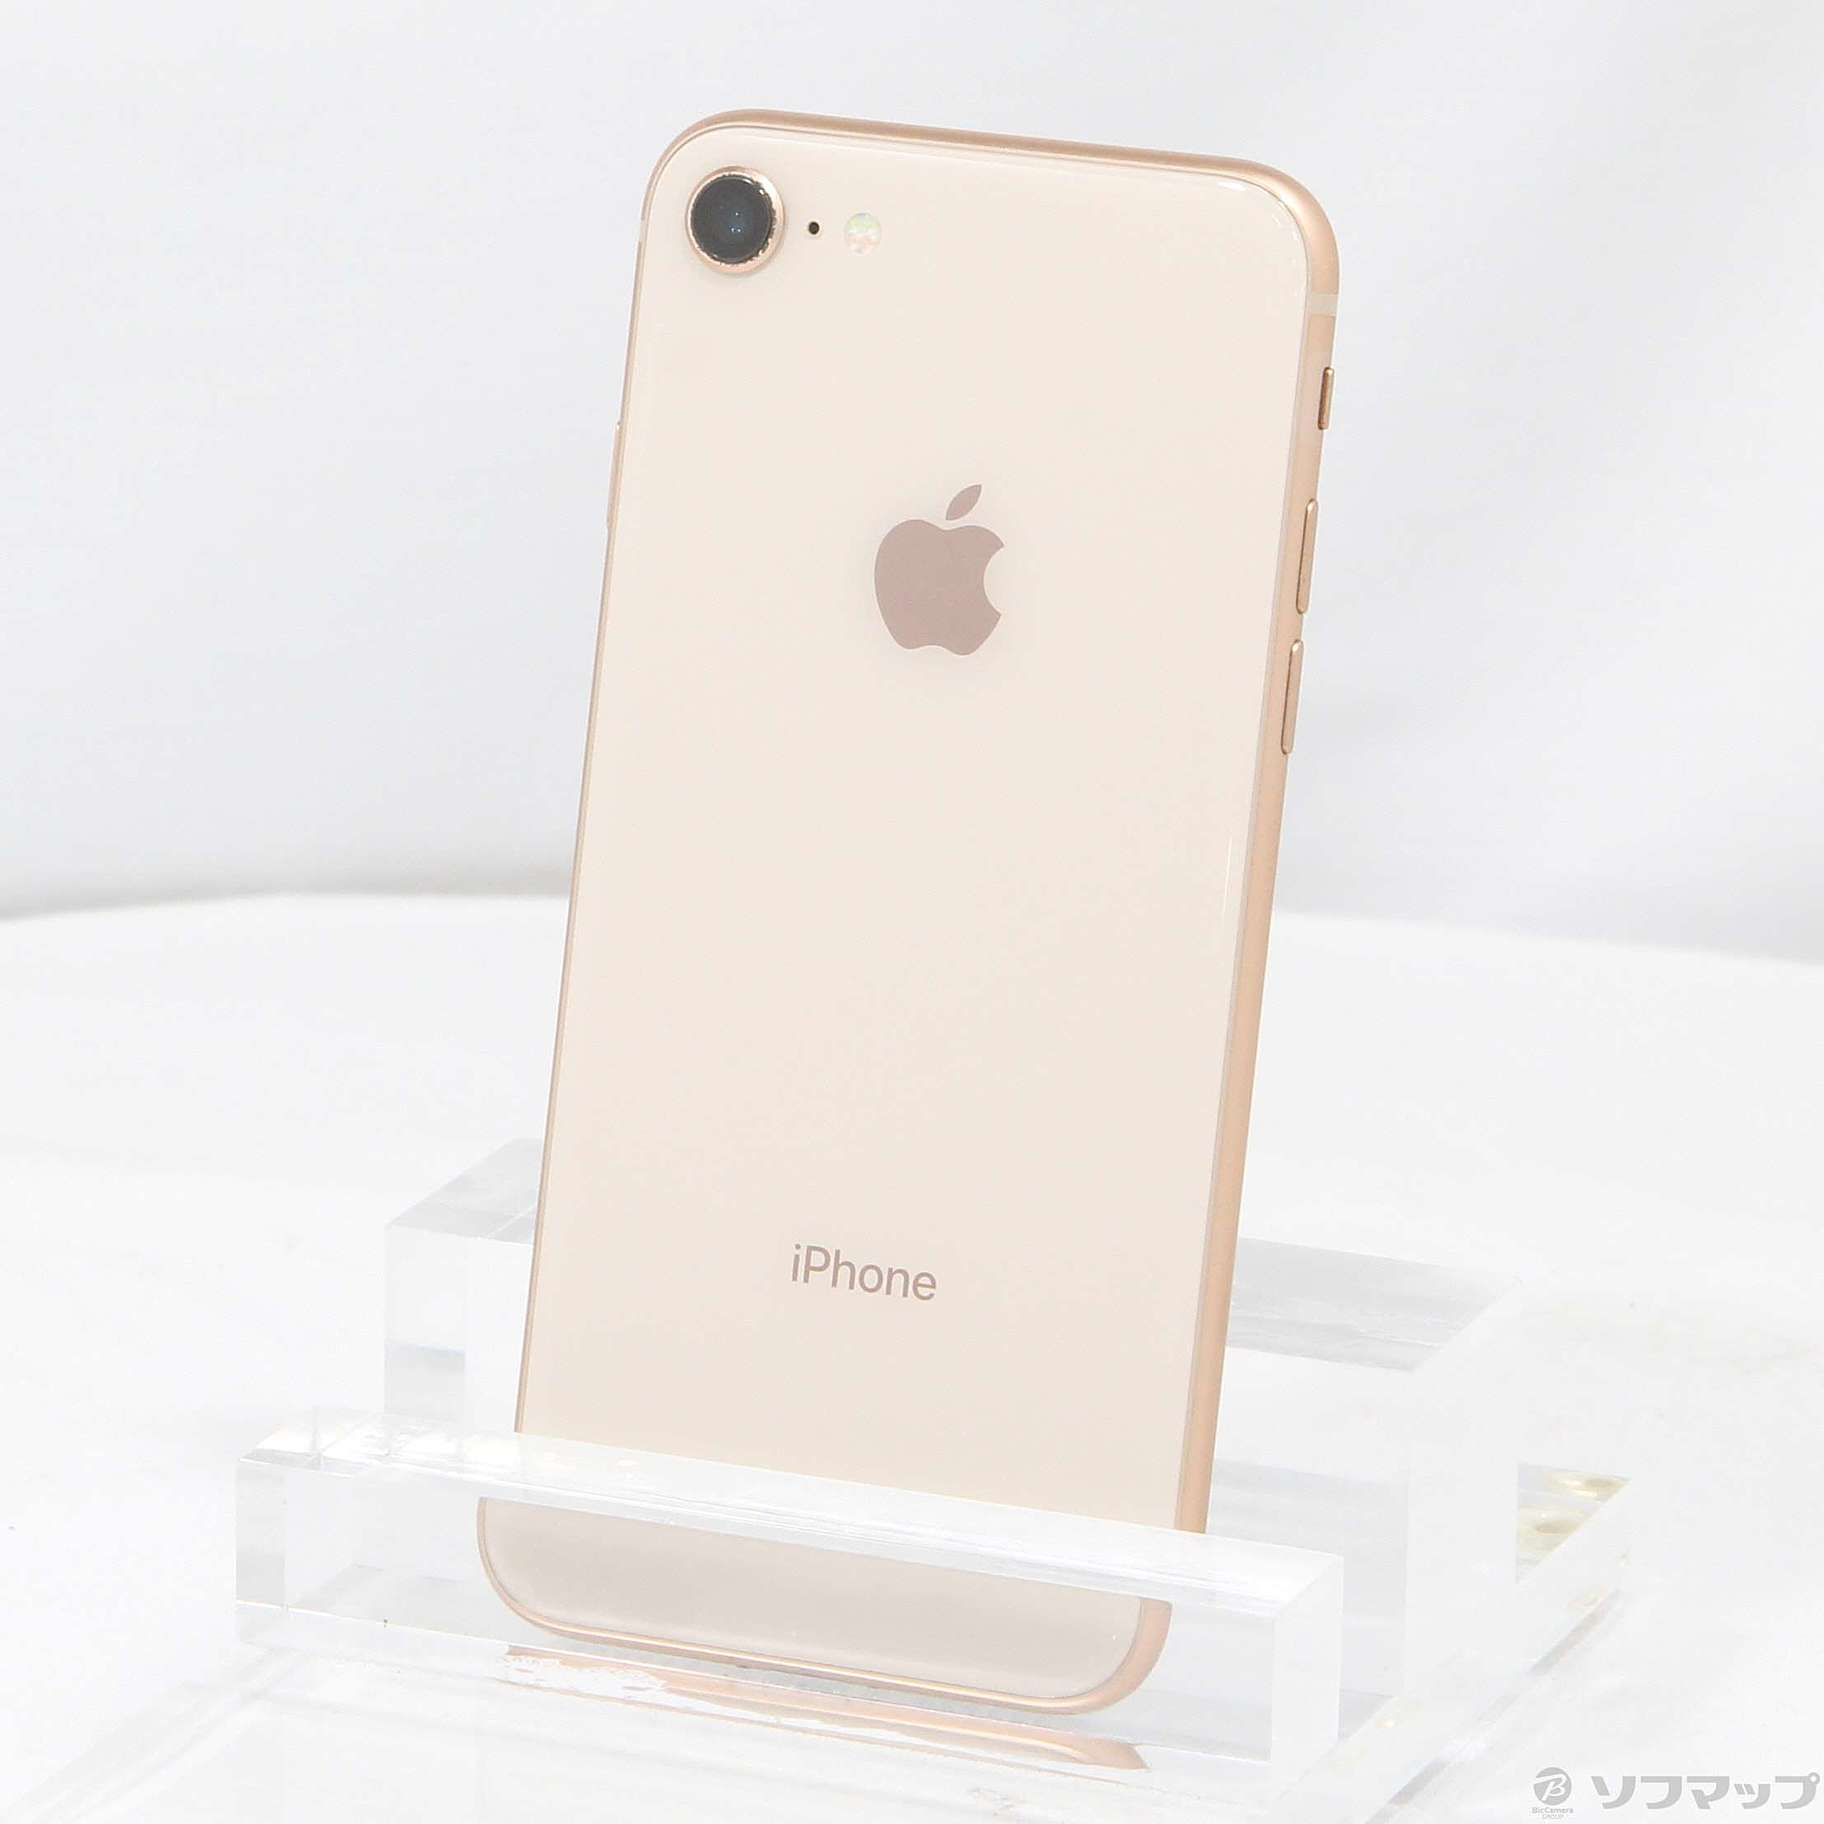 iPhone Gold 64 GB SIMフリー - 7